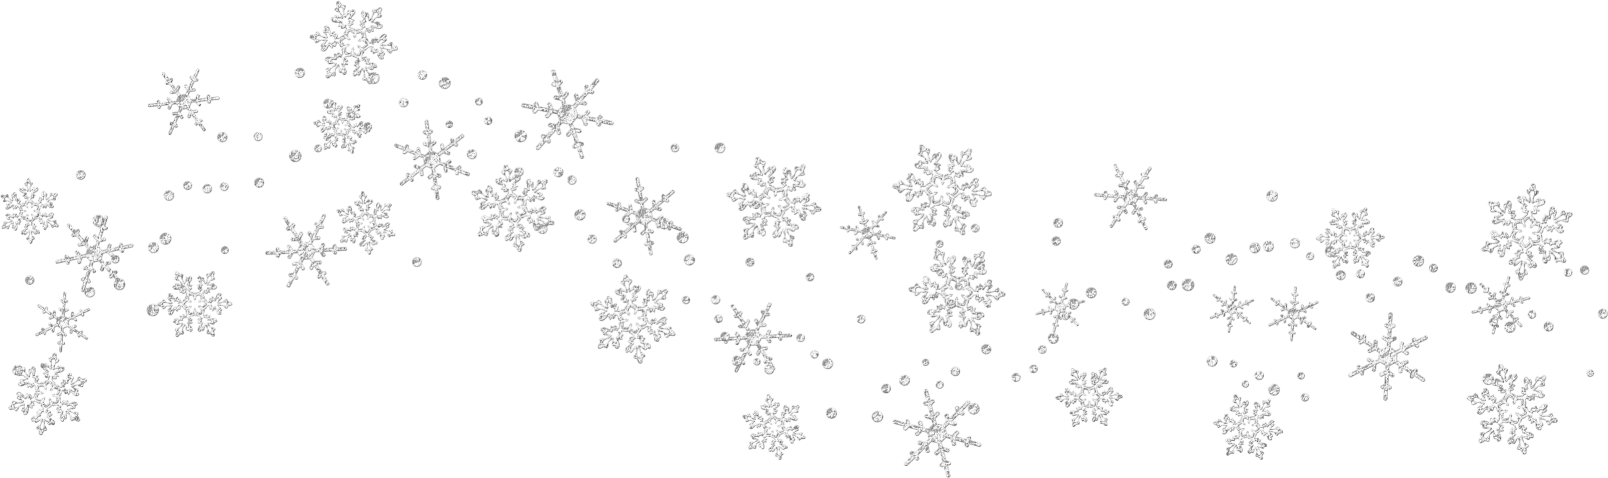 snowflake clipart trail